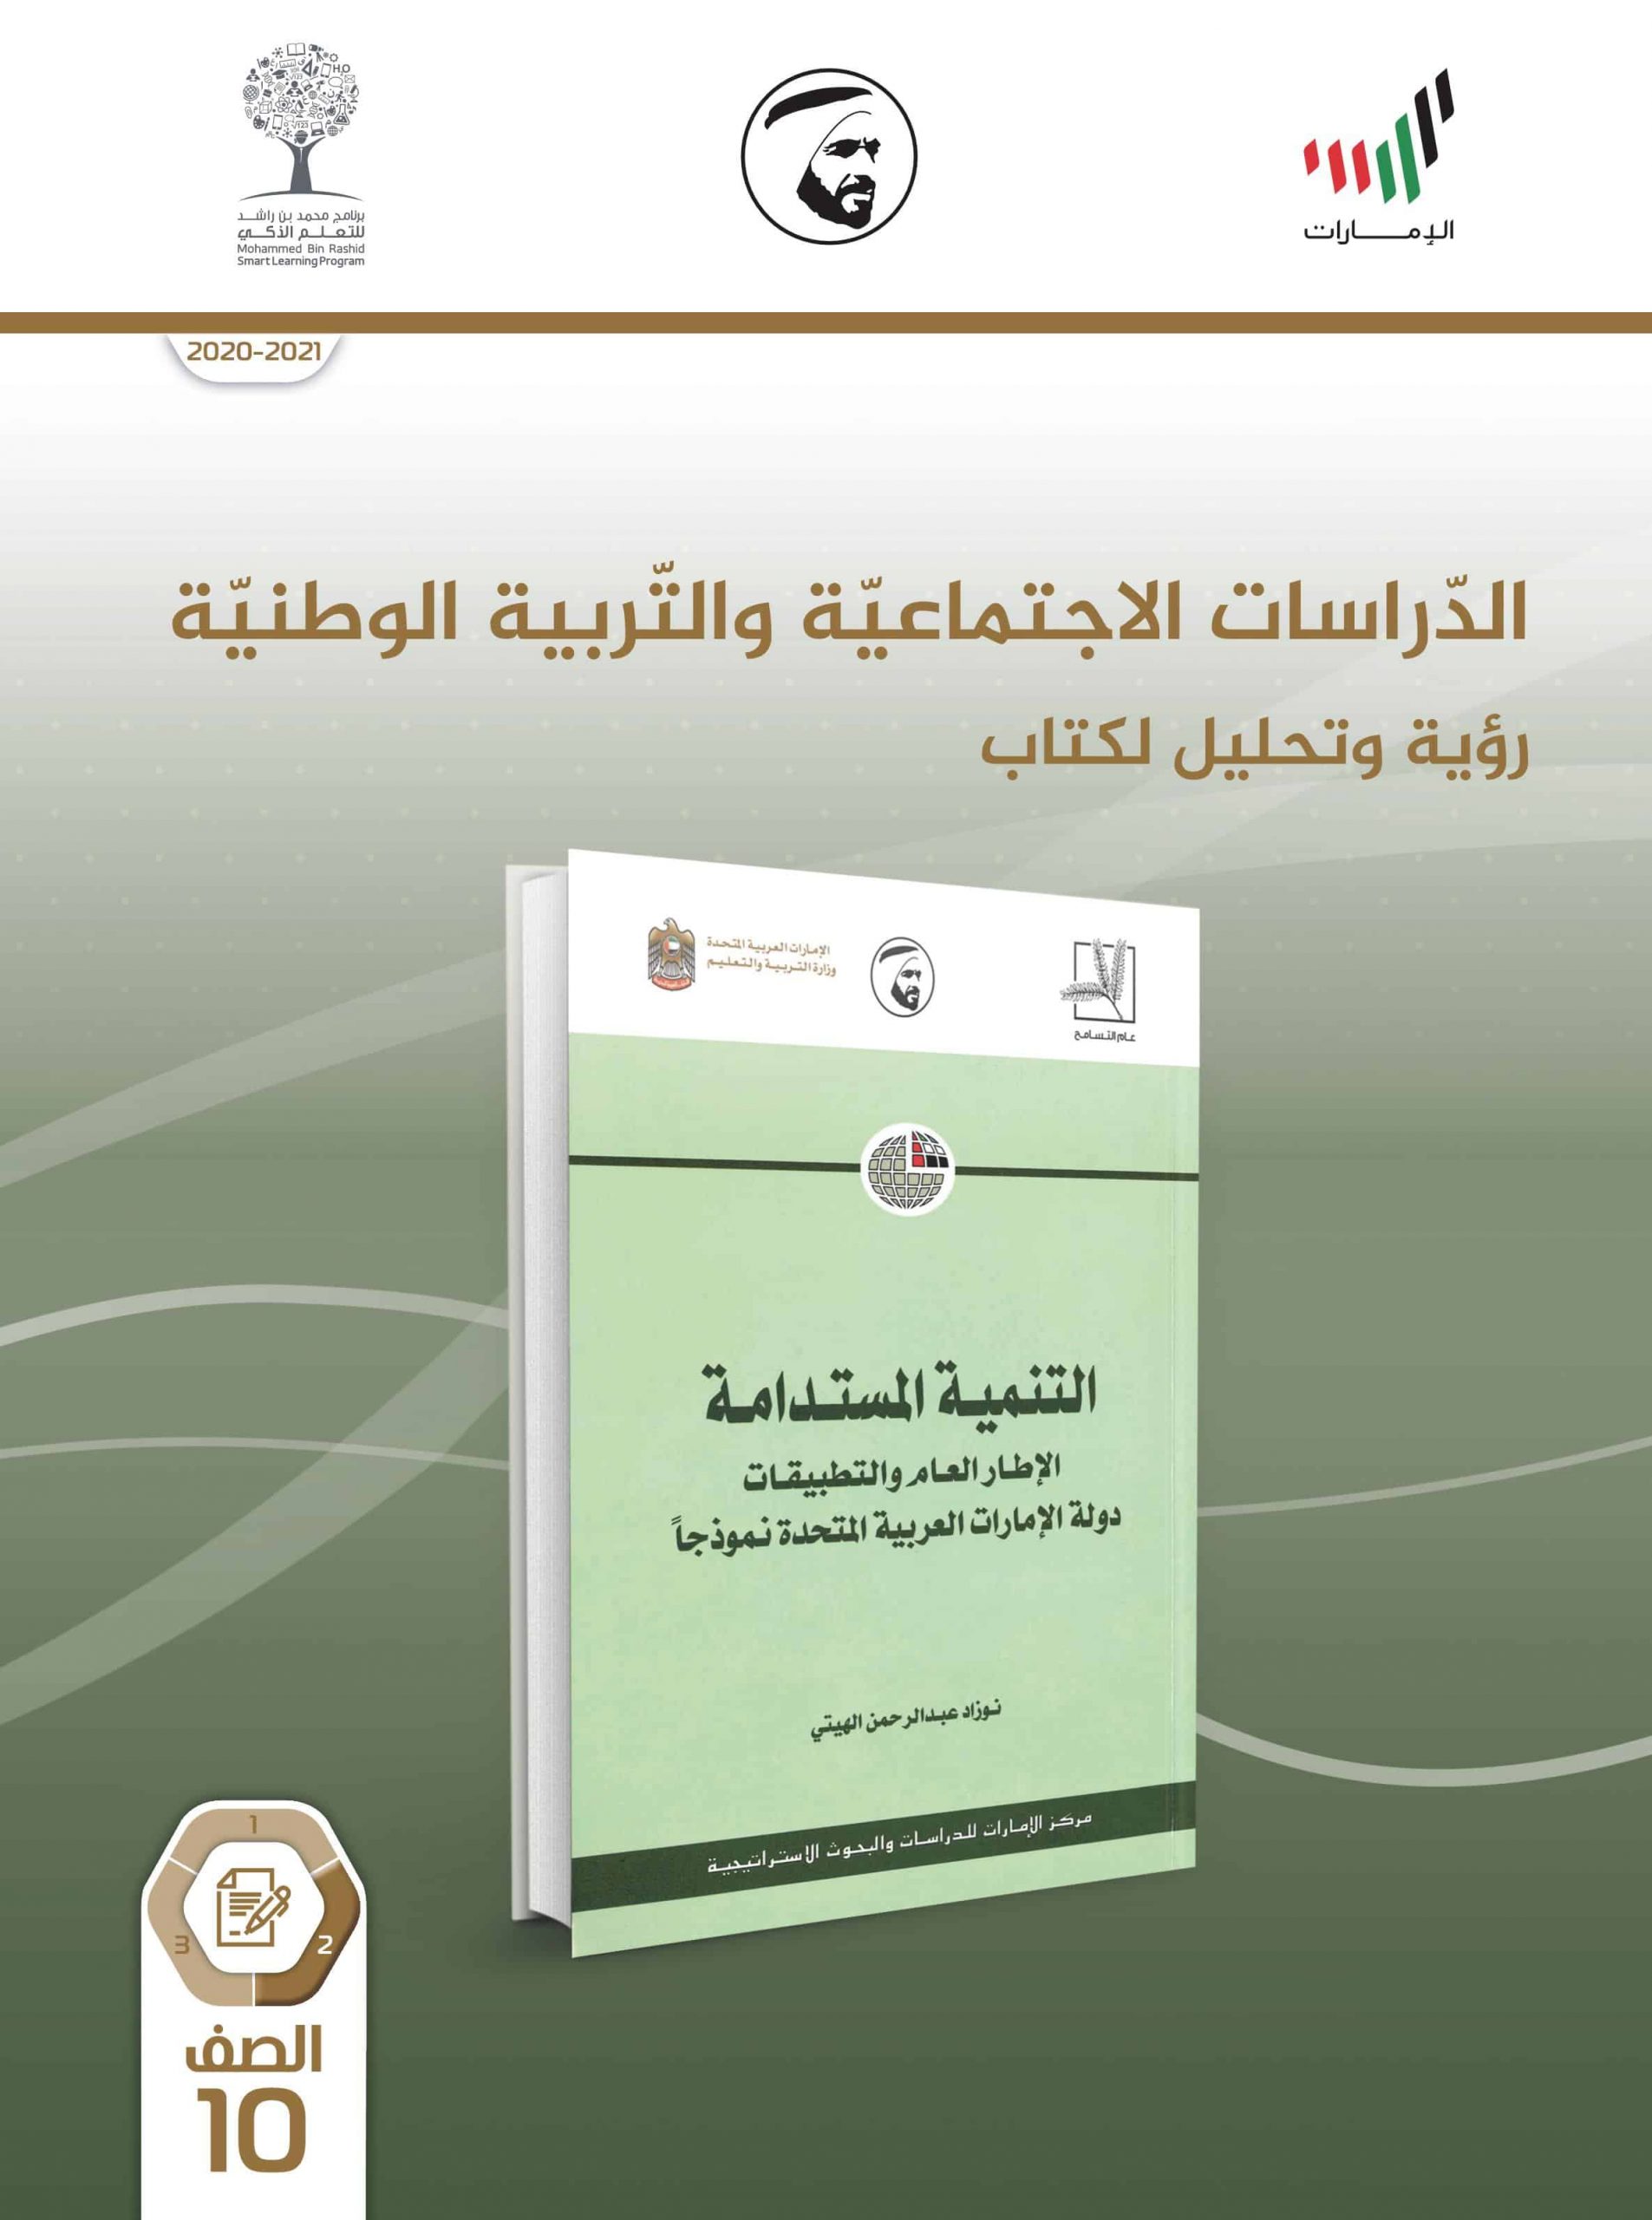 كتاب النشاط للطالب الفصل الدراسي الثاني 2020-2021 الصف العاشر مادة الدراسات الاجتماعية والتربية الوطنية